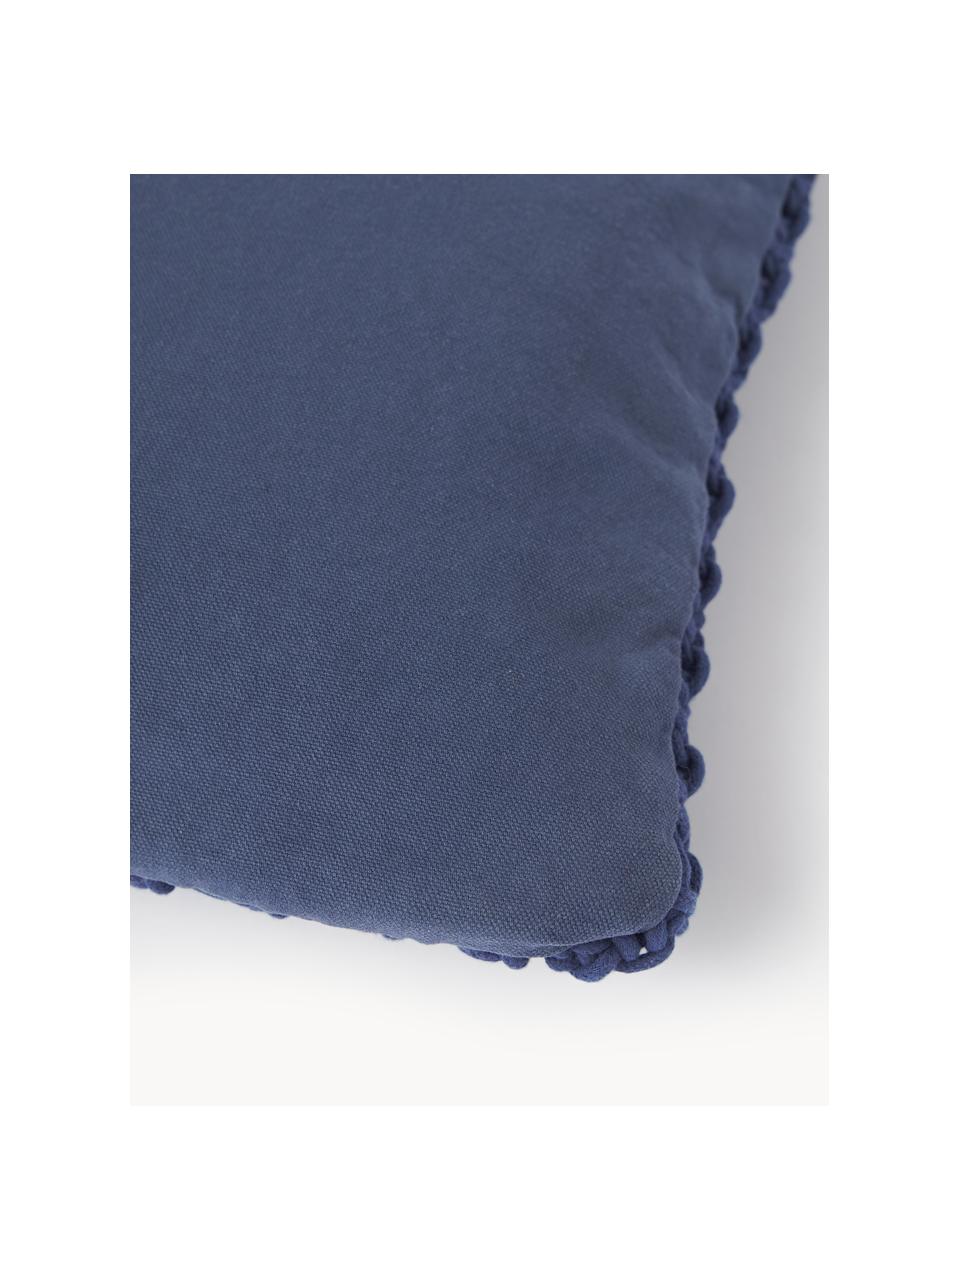 Poszewka na poduszkę z bawełny Gabrielle, 100% bawełna

Ten produkt został przetestowany pod kątem substancji szkodliwych i certyfikowany zgodnie z STANDARD 100 by OEKO-TEX® 11.HIN.00050, Hohenstein HTTI., Ciemny niebieski, S 45 x D 45 cm